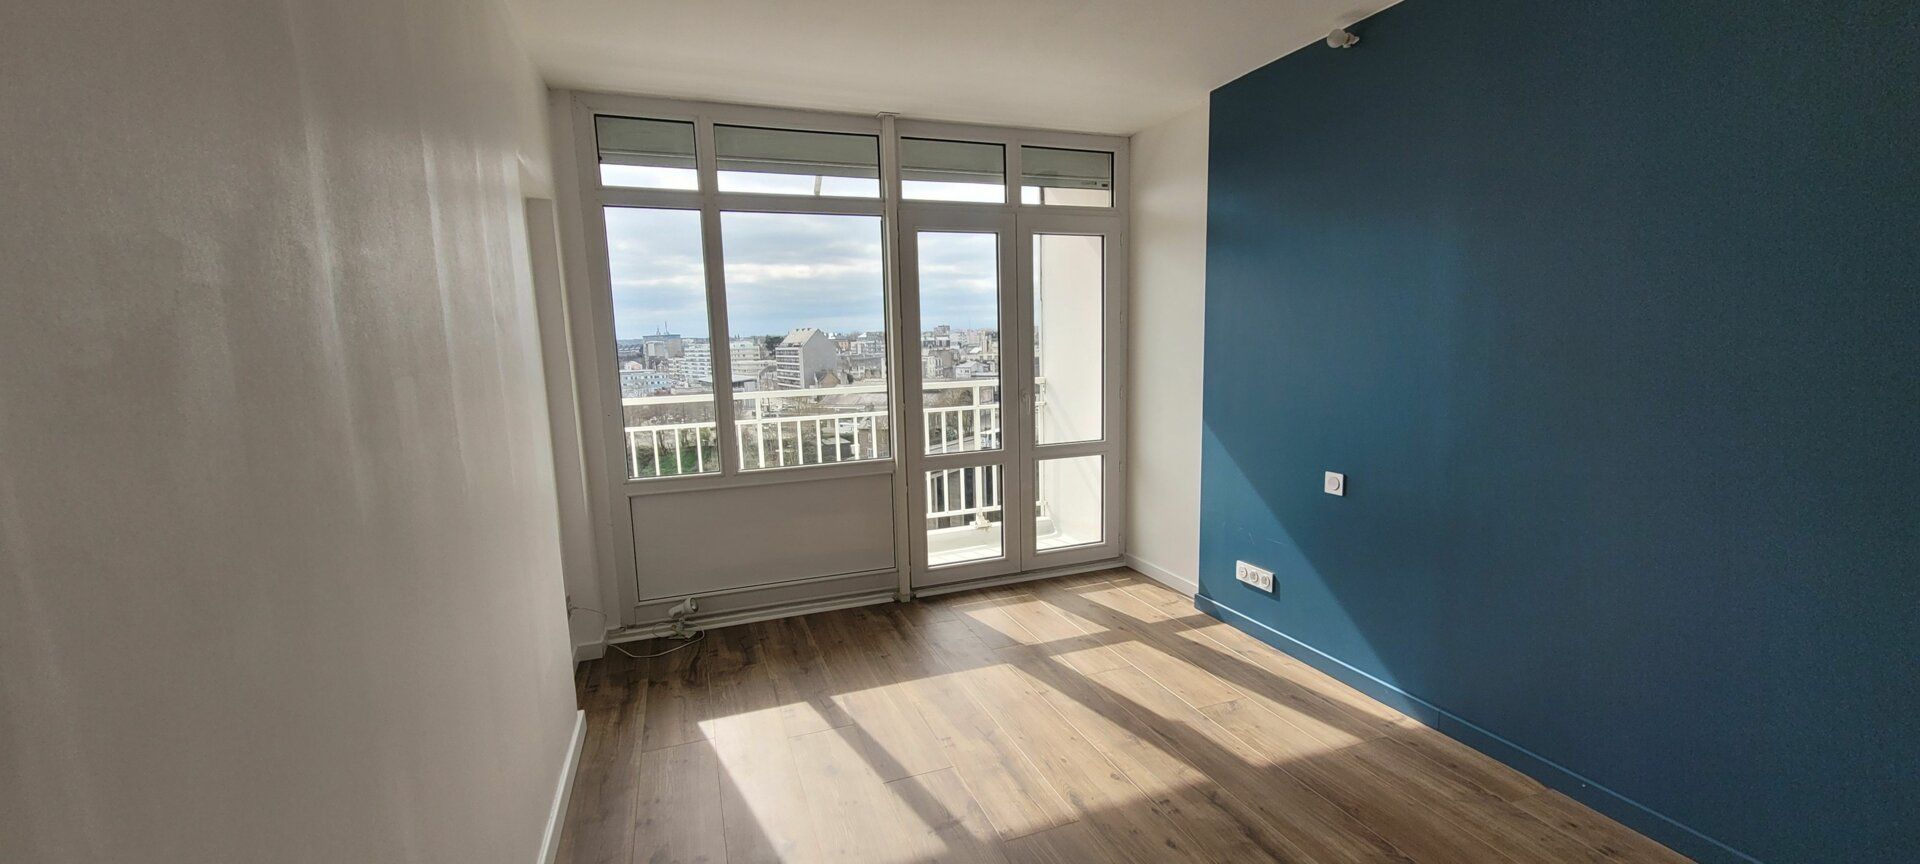 Appartement à vendre 3 72.15m2 à Saint-Brieuc vignette-10